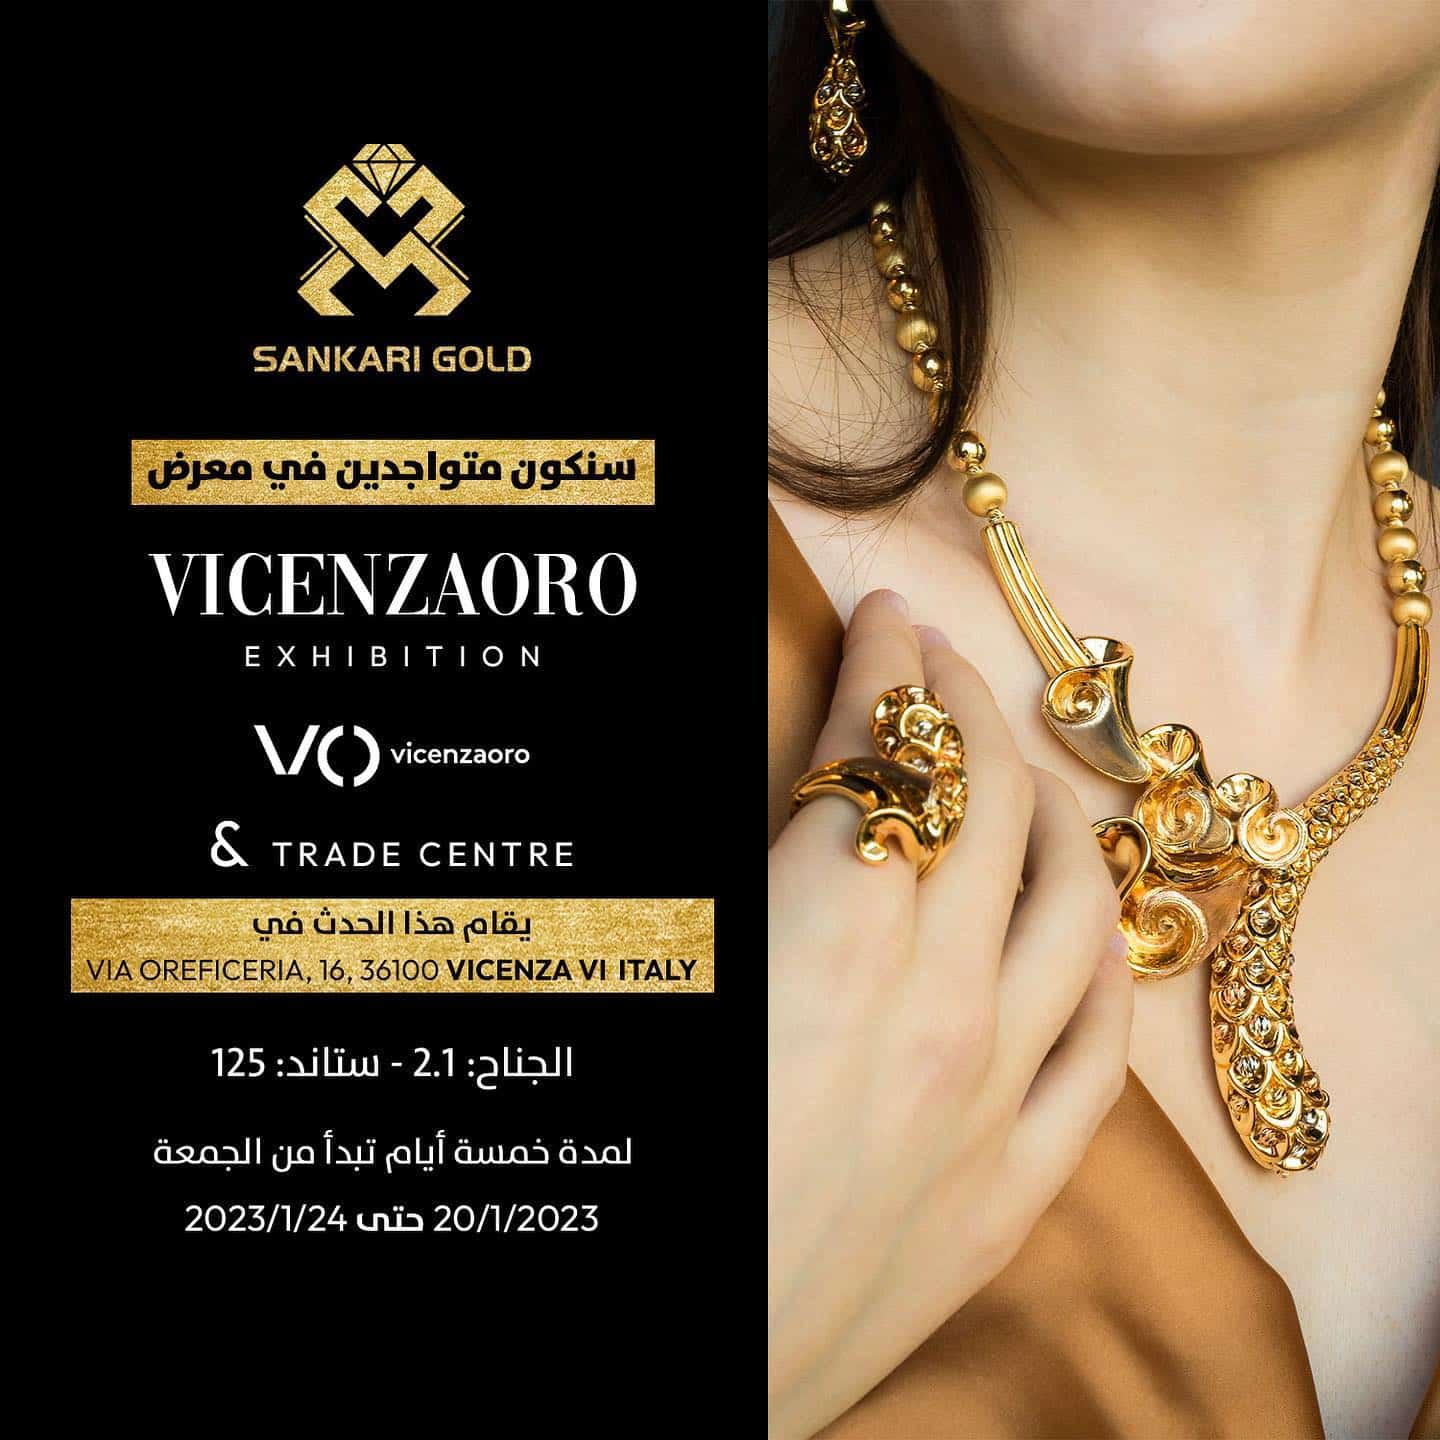 قريباً انطلاق النسخة الجديدة من معرض فيتشنزا Vicenzaoro للذهب والمجوهرات